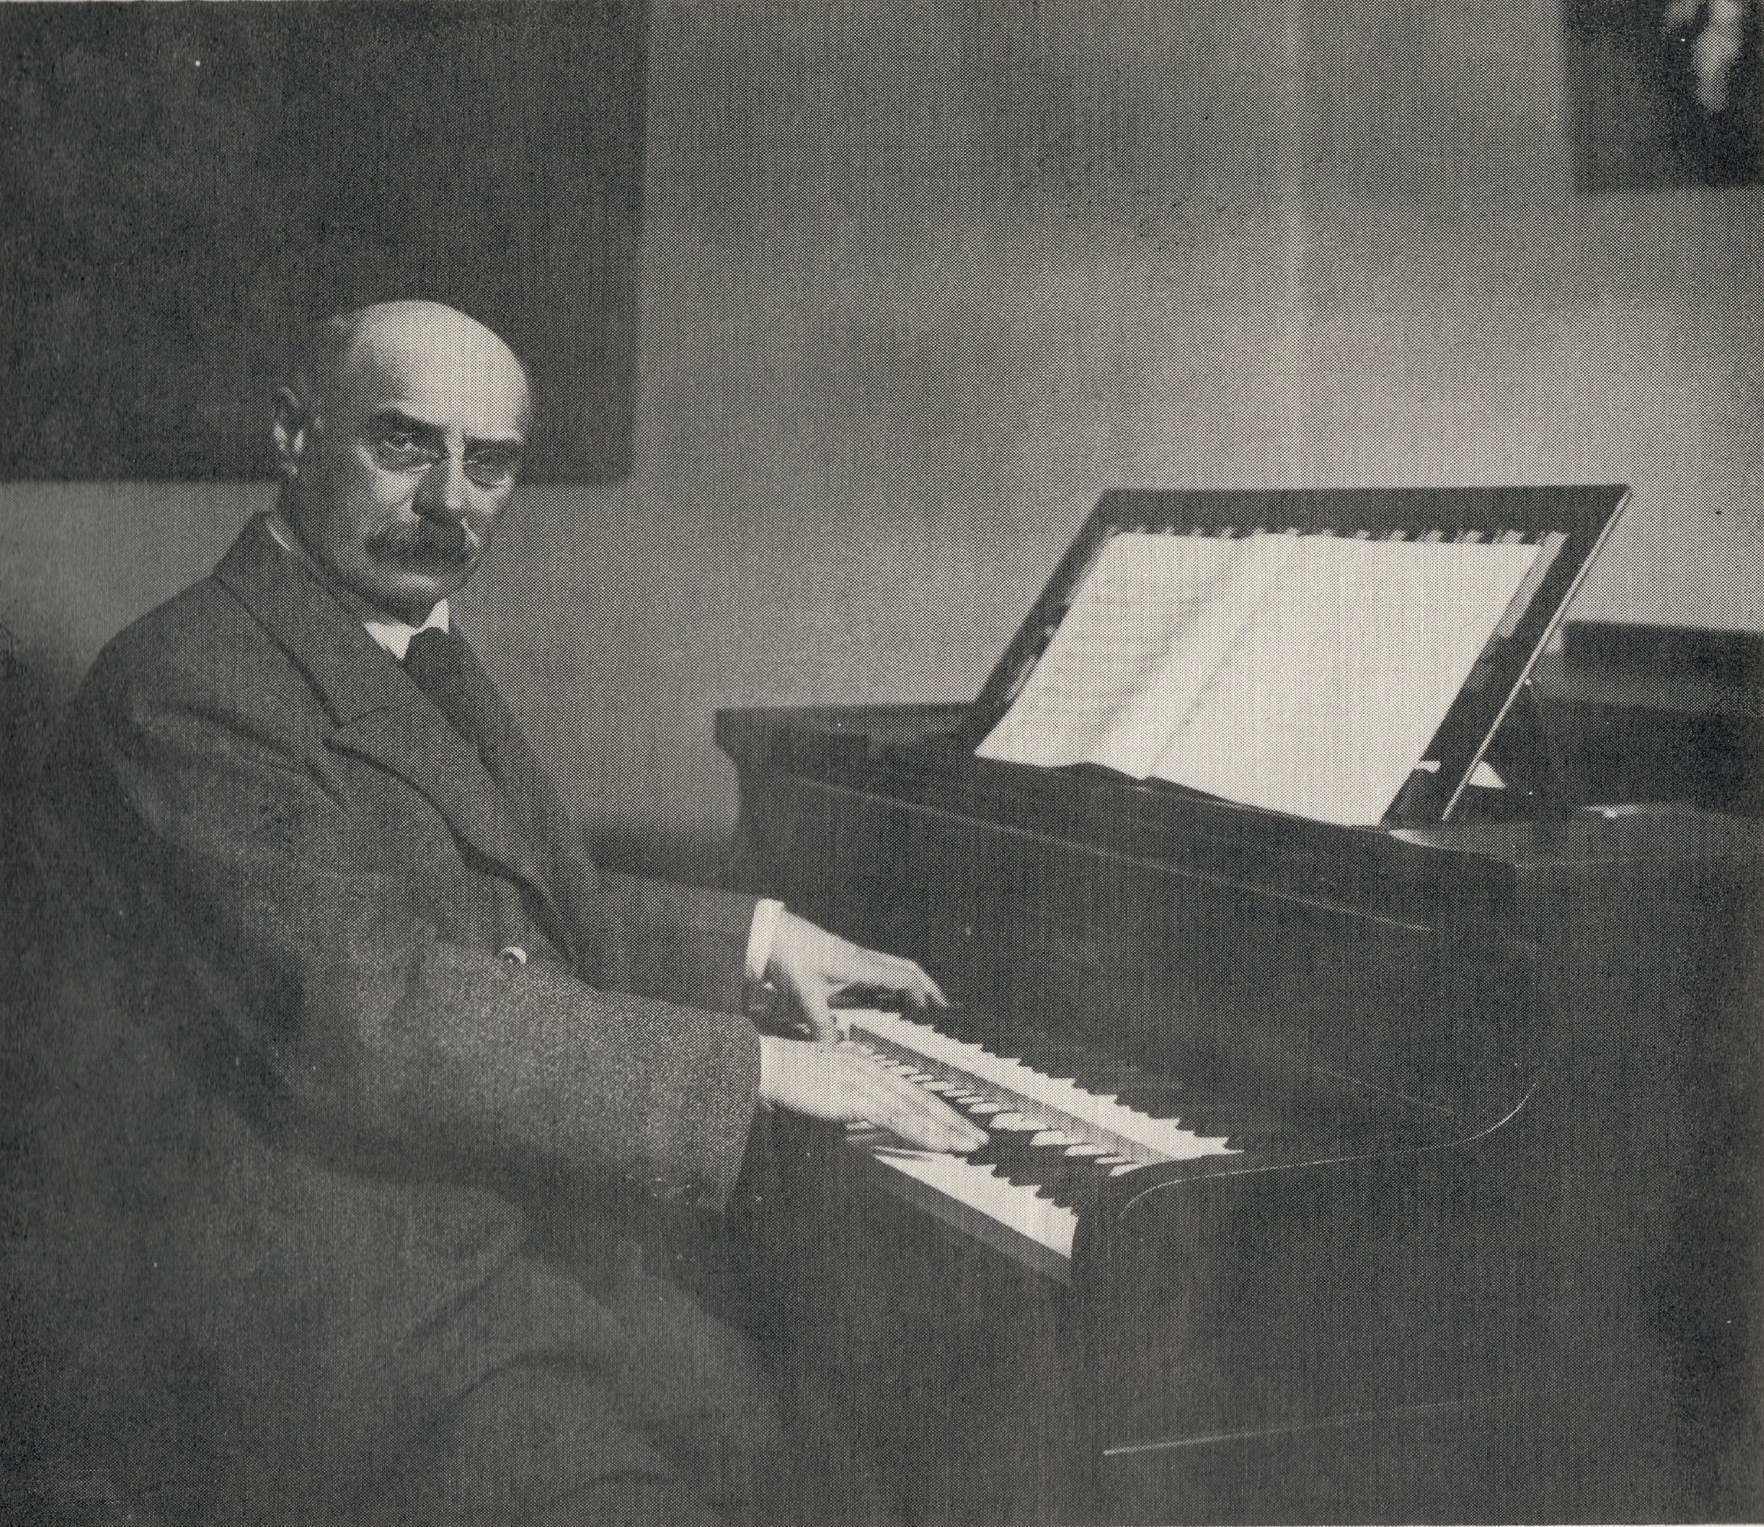 Emanuel Moór am Duplex Coupler Grand Piano